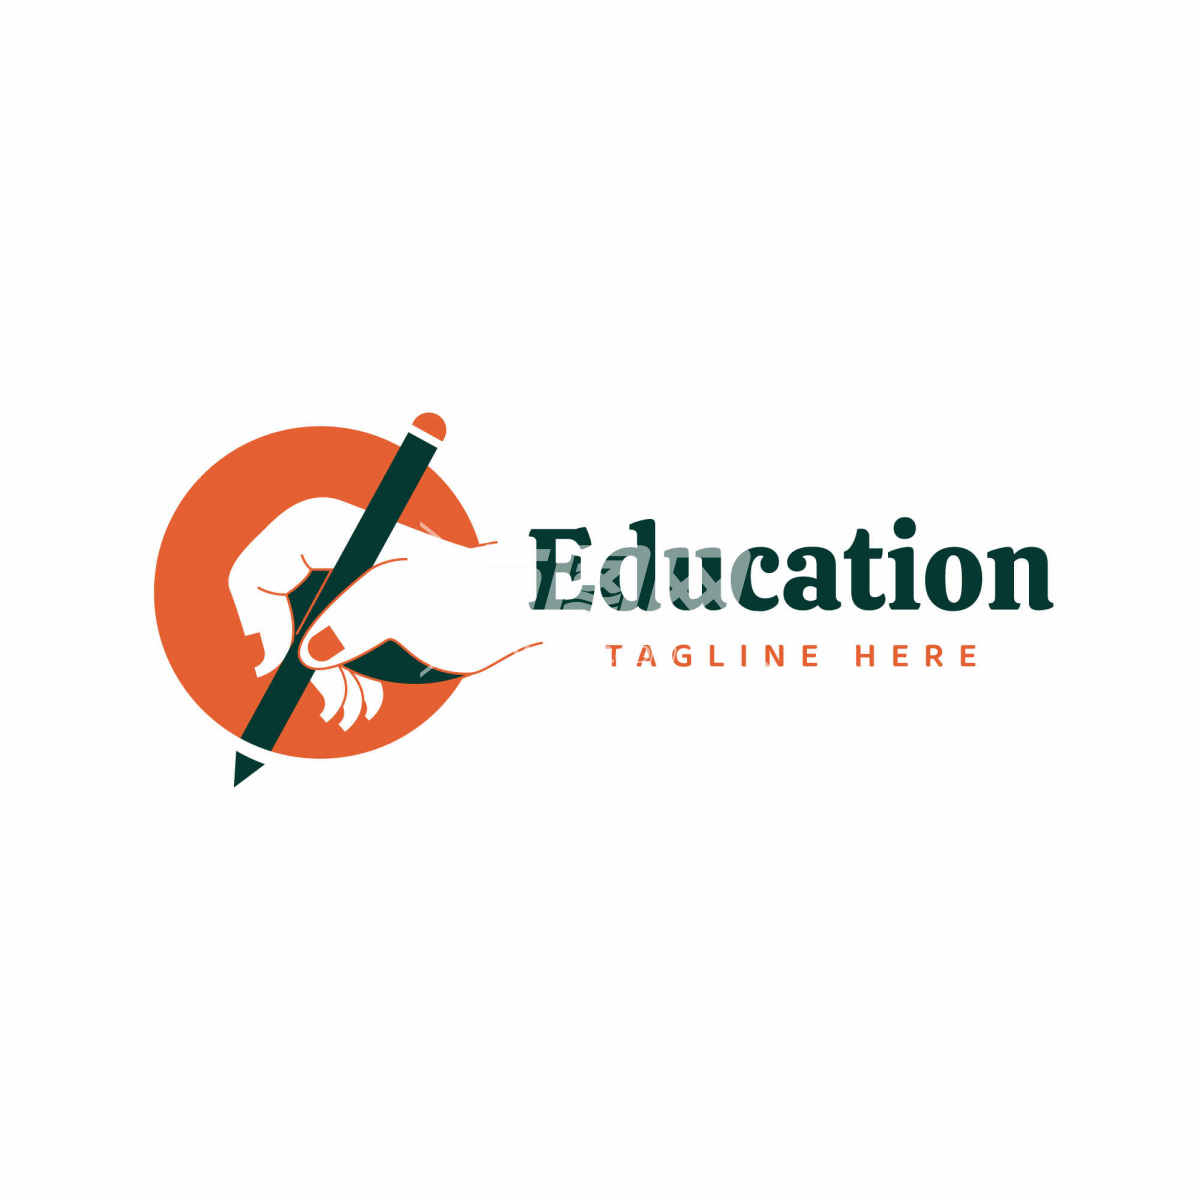 教育相关的logo设计